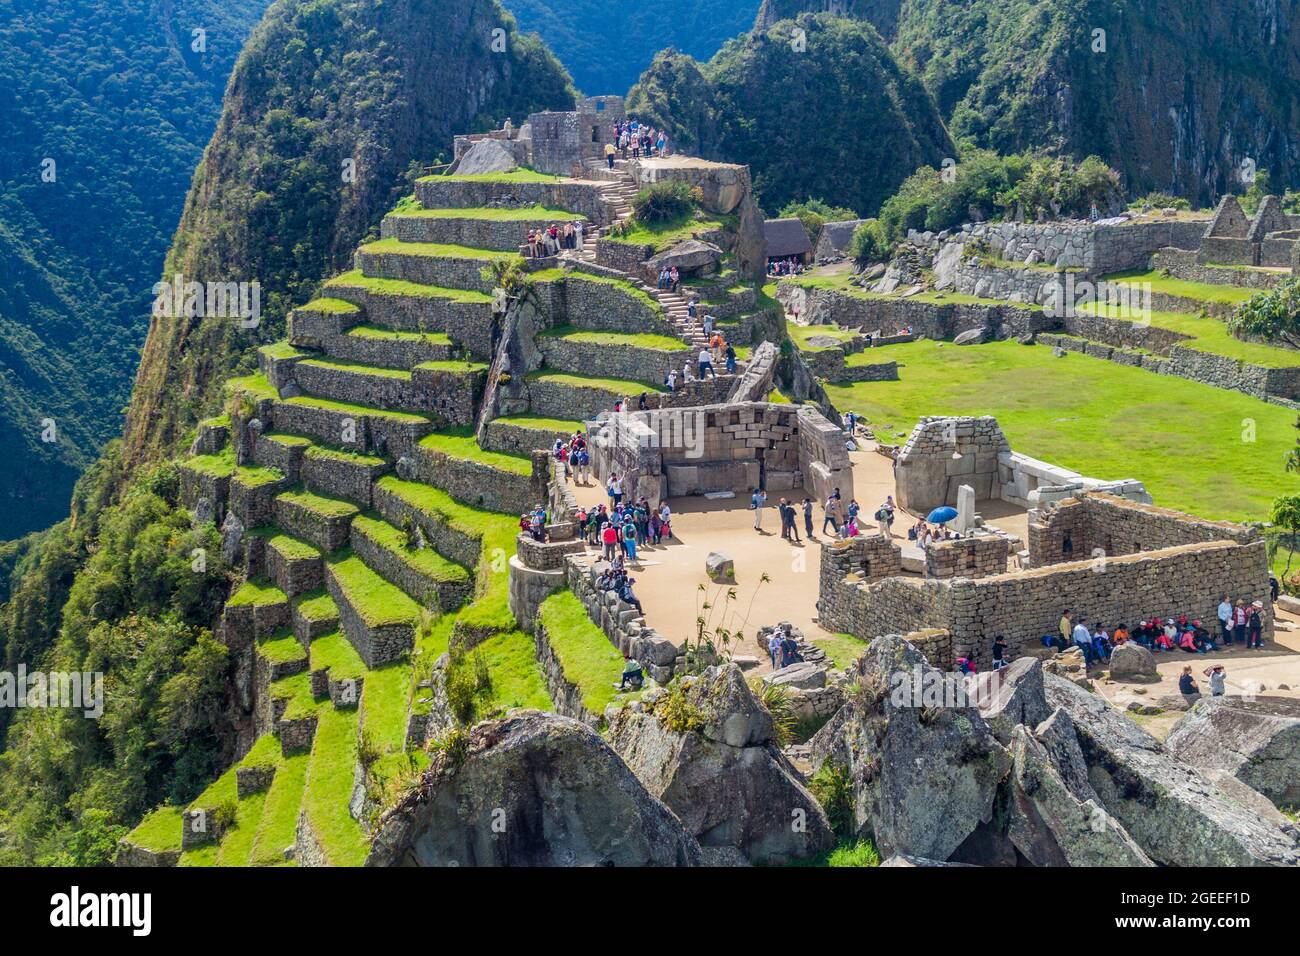 MACHU PICCHU, PERU - 18. MAI 2015: Besuchermassen in der Tempelzone der Machu Picchu Ruinen, Peru. Stockfoto